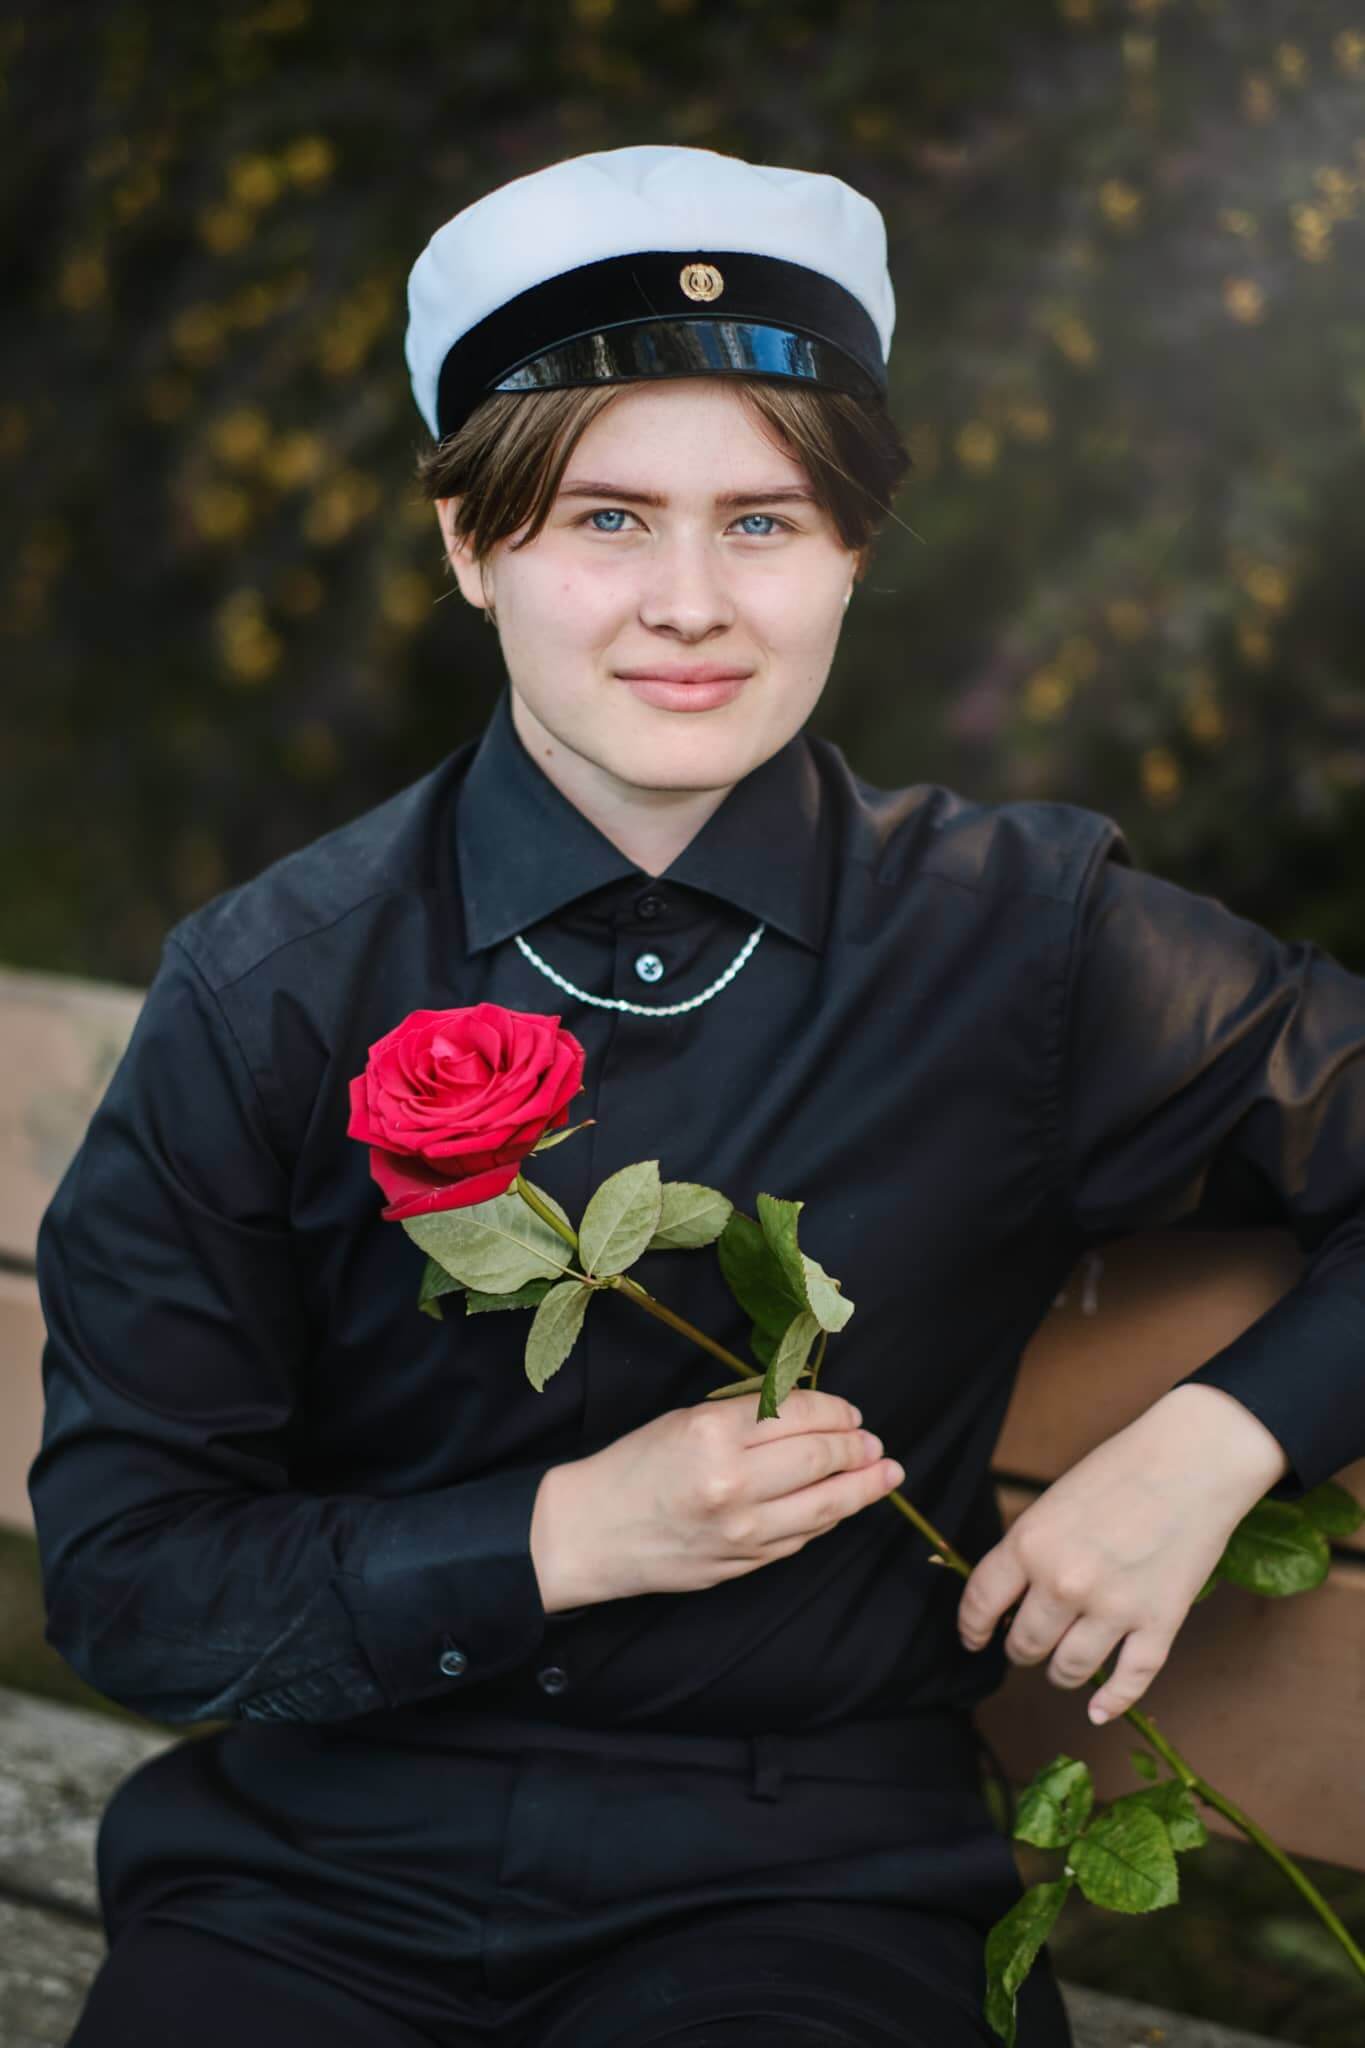 Ylioppilaskuva Jyväskylä Naissaaressa istuen penkillä ruusun kanssa